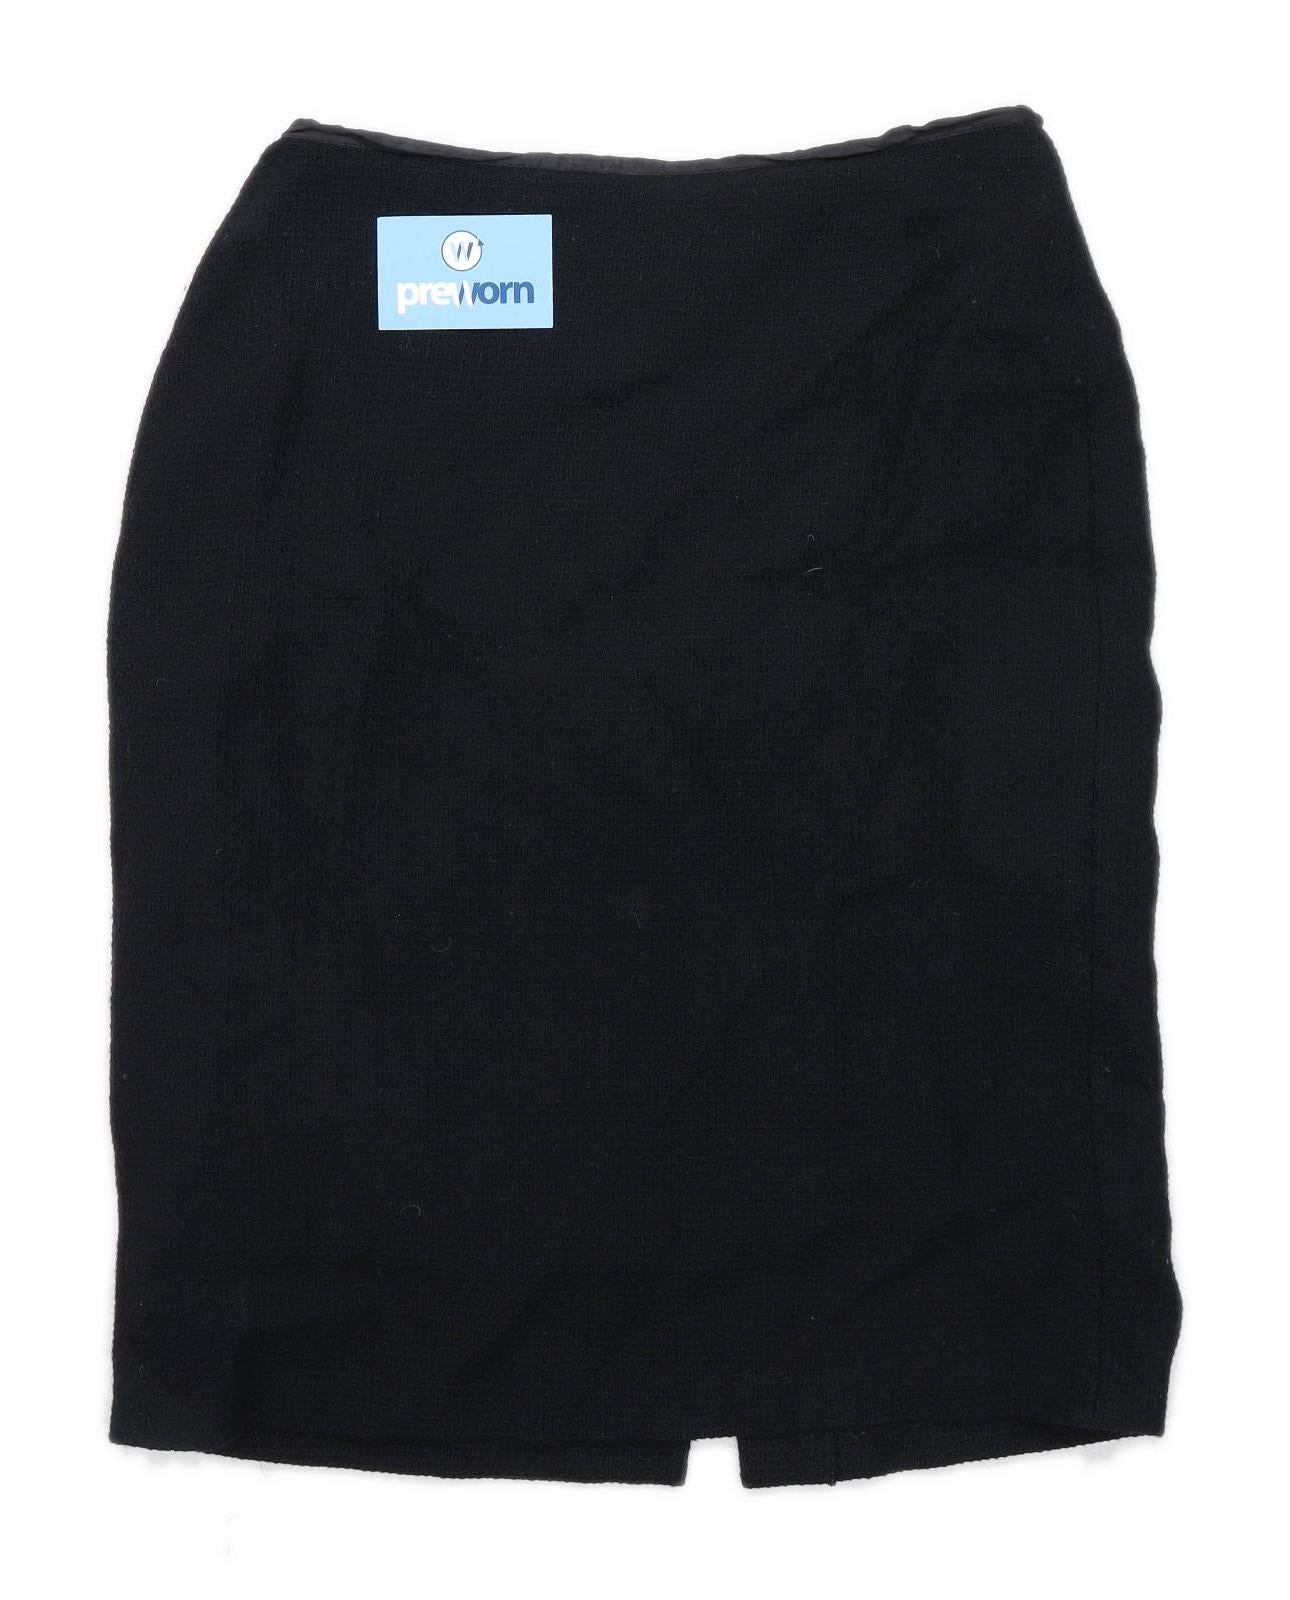 Marks & Spencer Womens Size 14 Wool Blend Black Skirt (Regular)